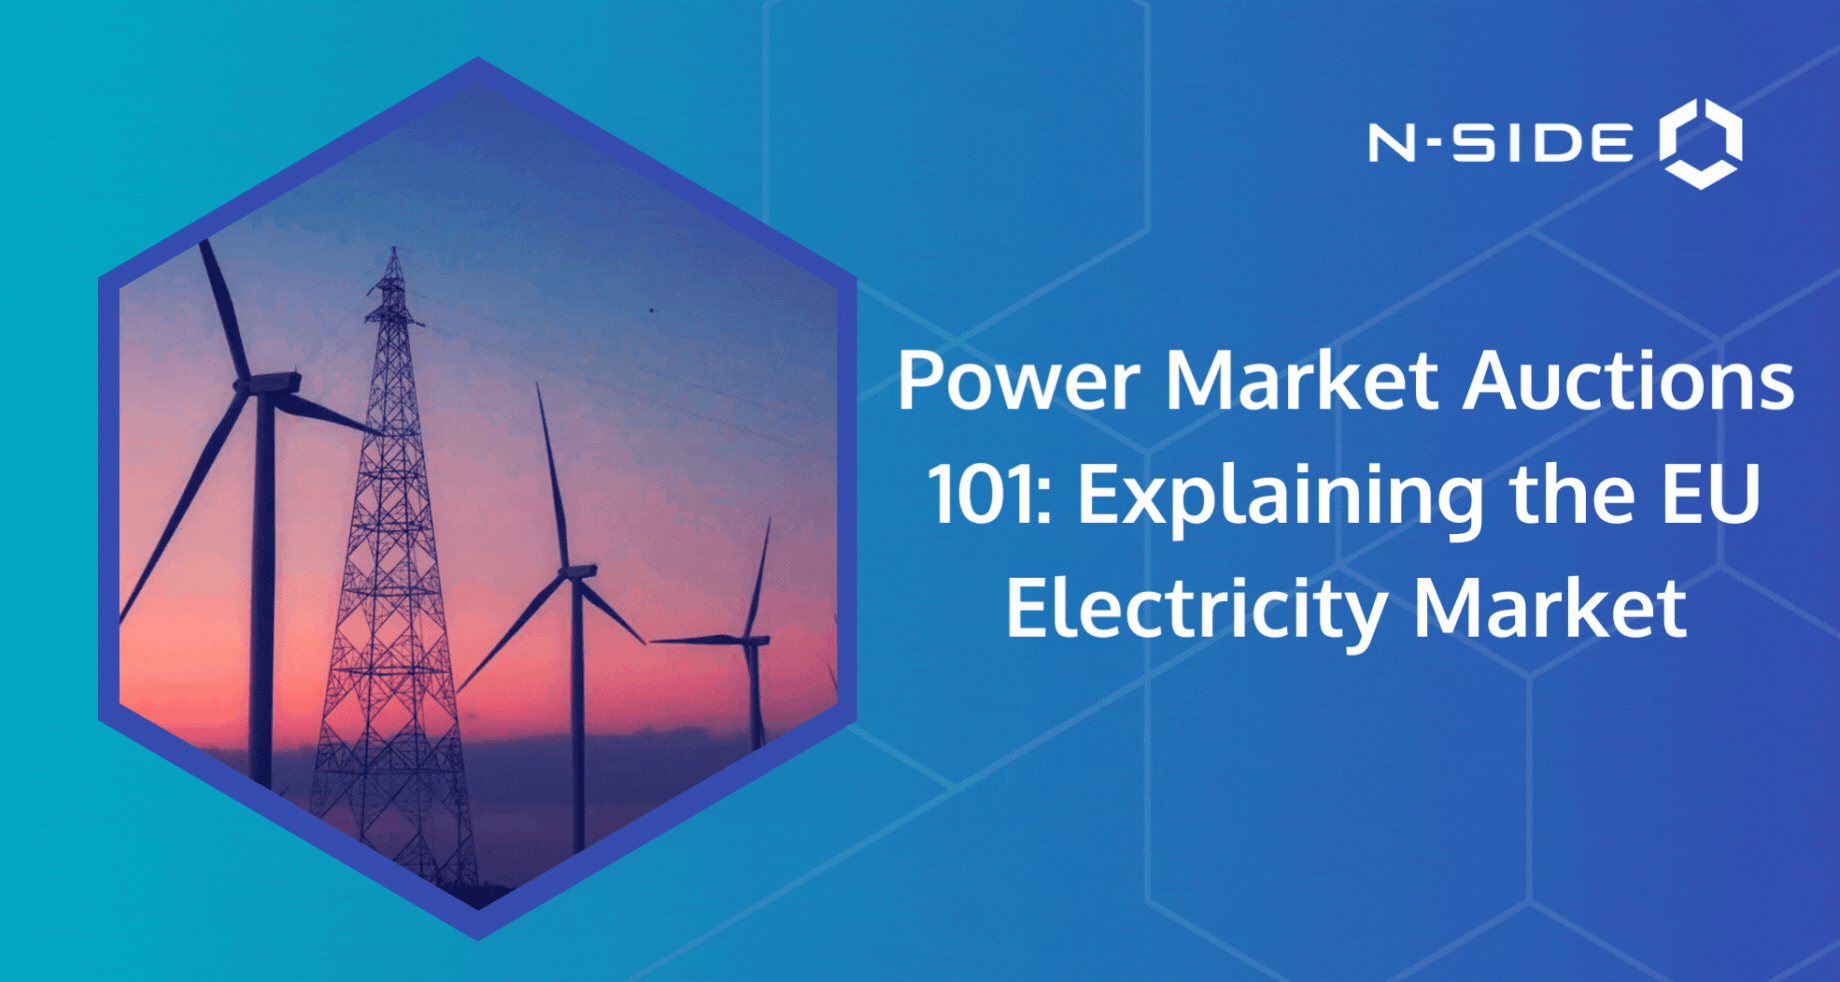 Power Market Auctions 101: Explaining the EU Electricity Market